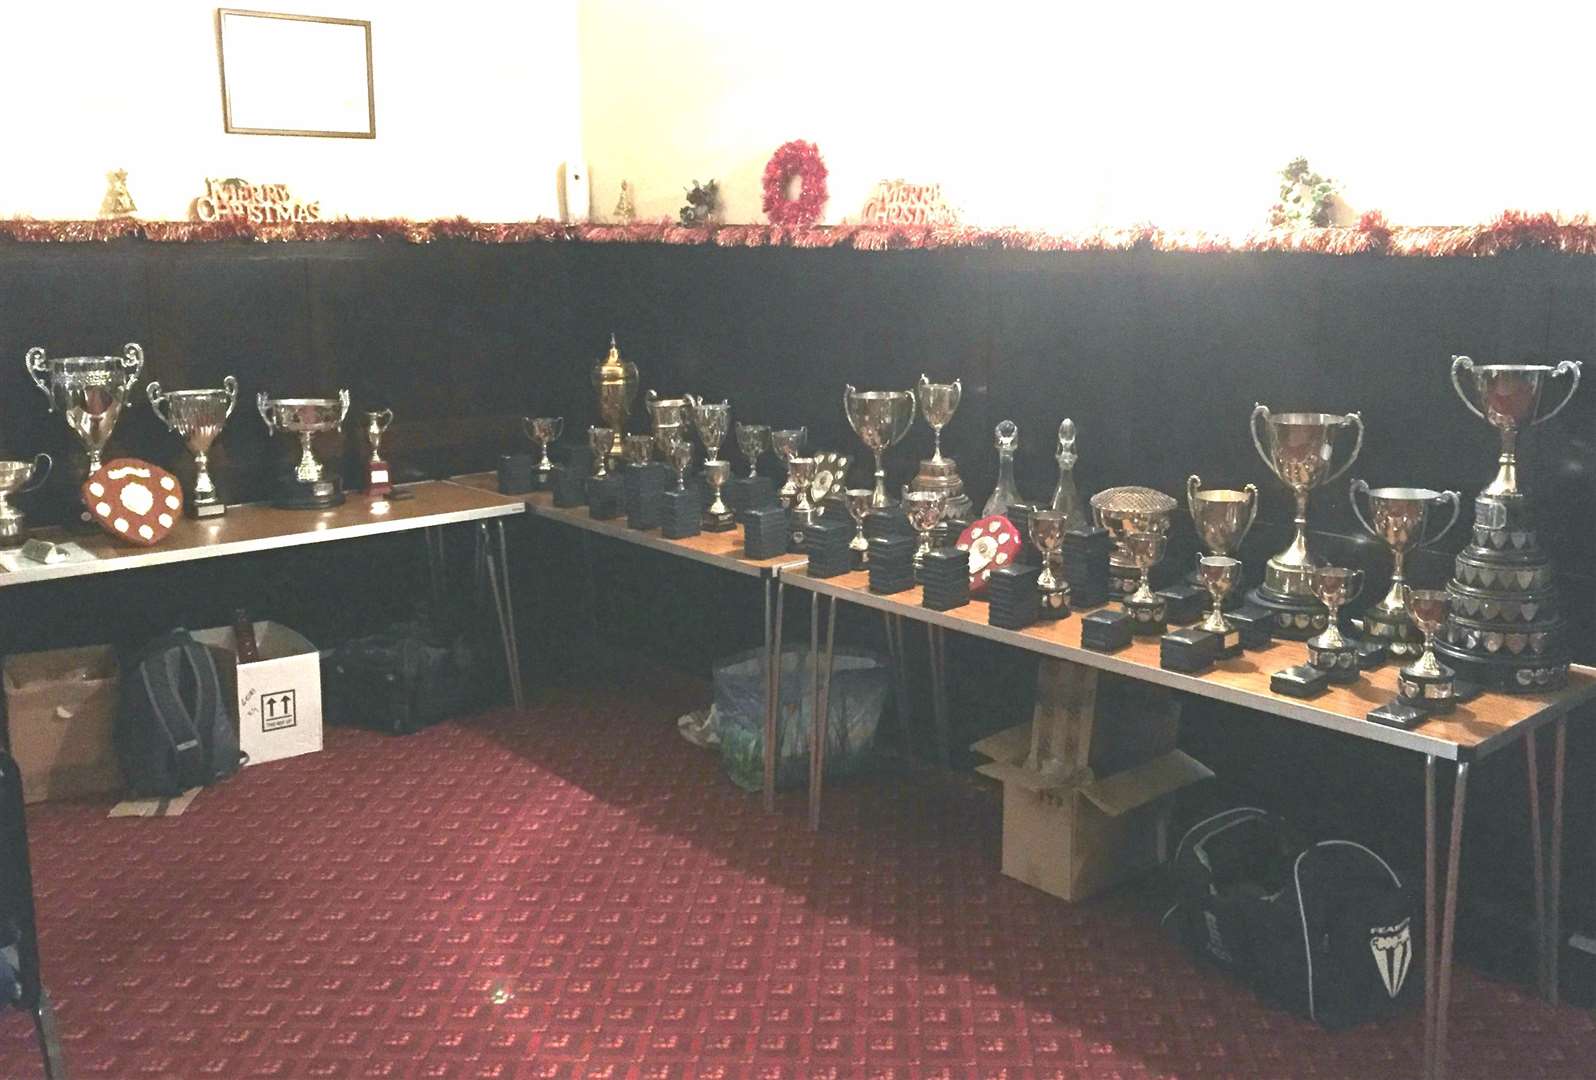 The league's trophies